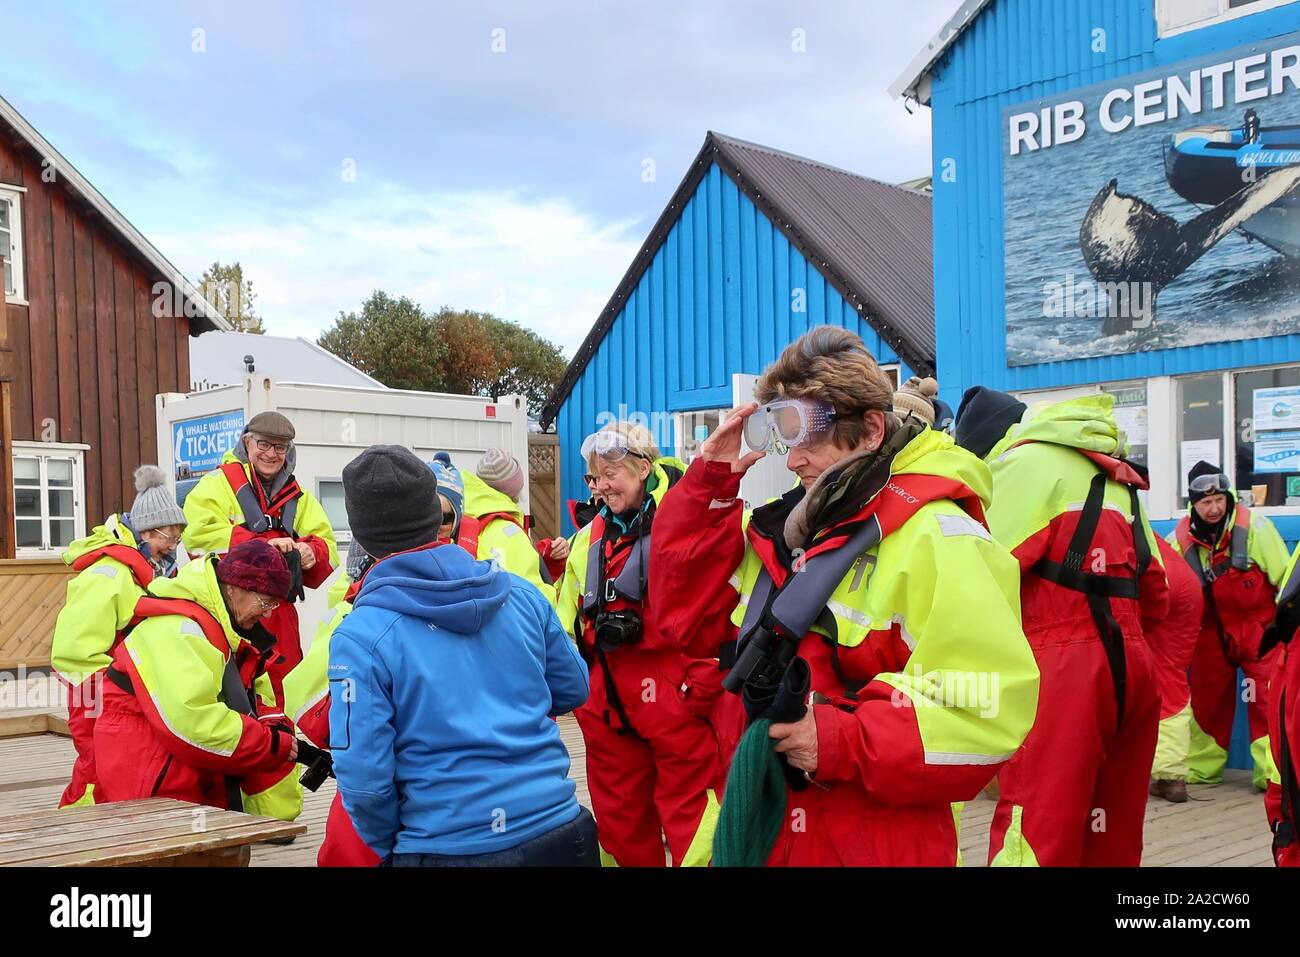 Husavik, Islandia - 25 de septiembre de 2019: Los turistas obteniendo kitted en trajes y chalecos salvavidas y gafas listo para ir a ver ballenas en una costilla. Foto de stock